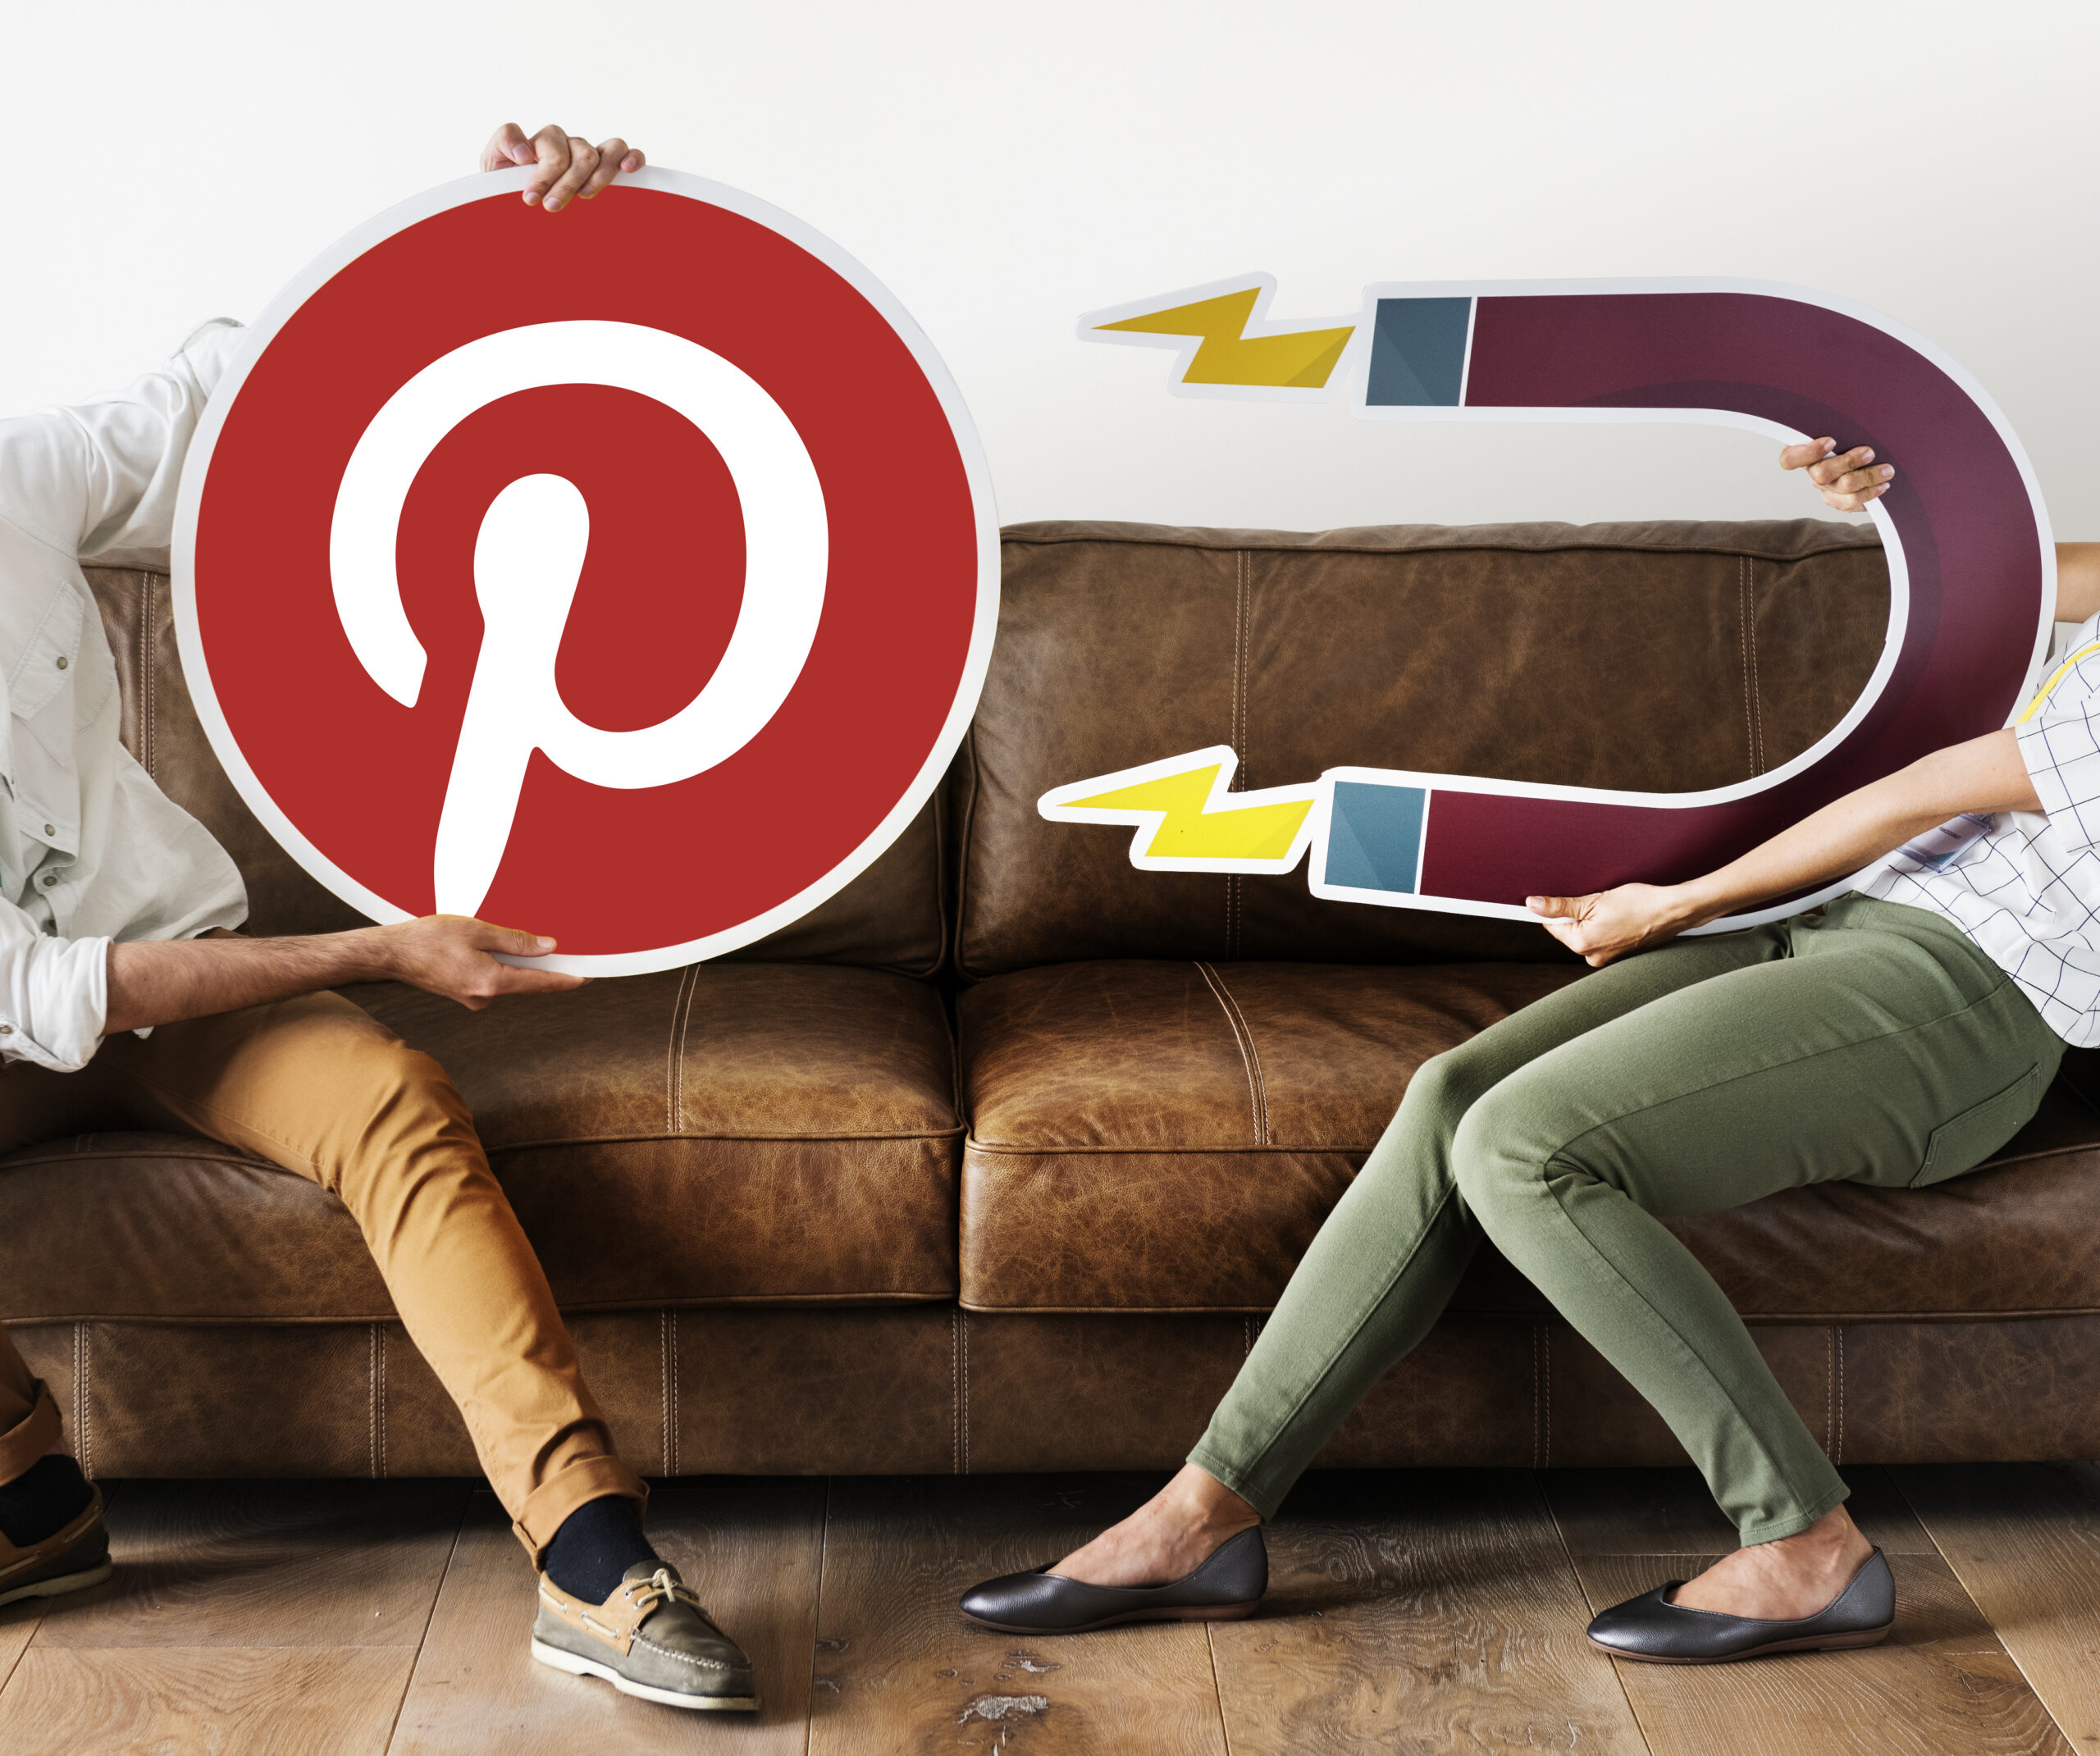 Descubra como fazer marketing pelo Pinterest